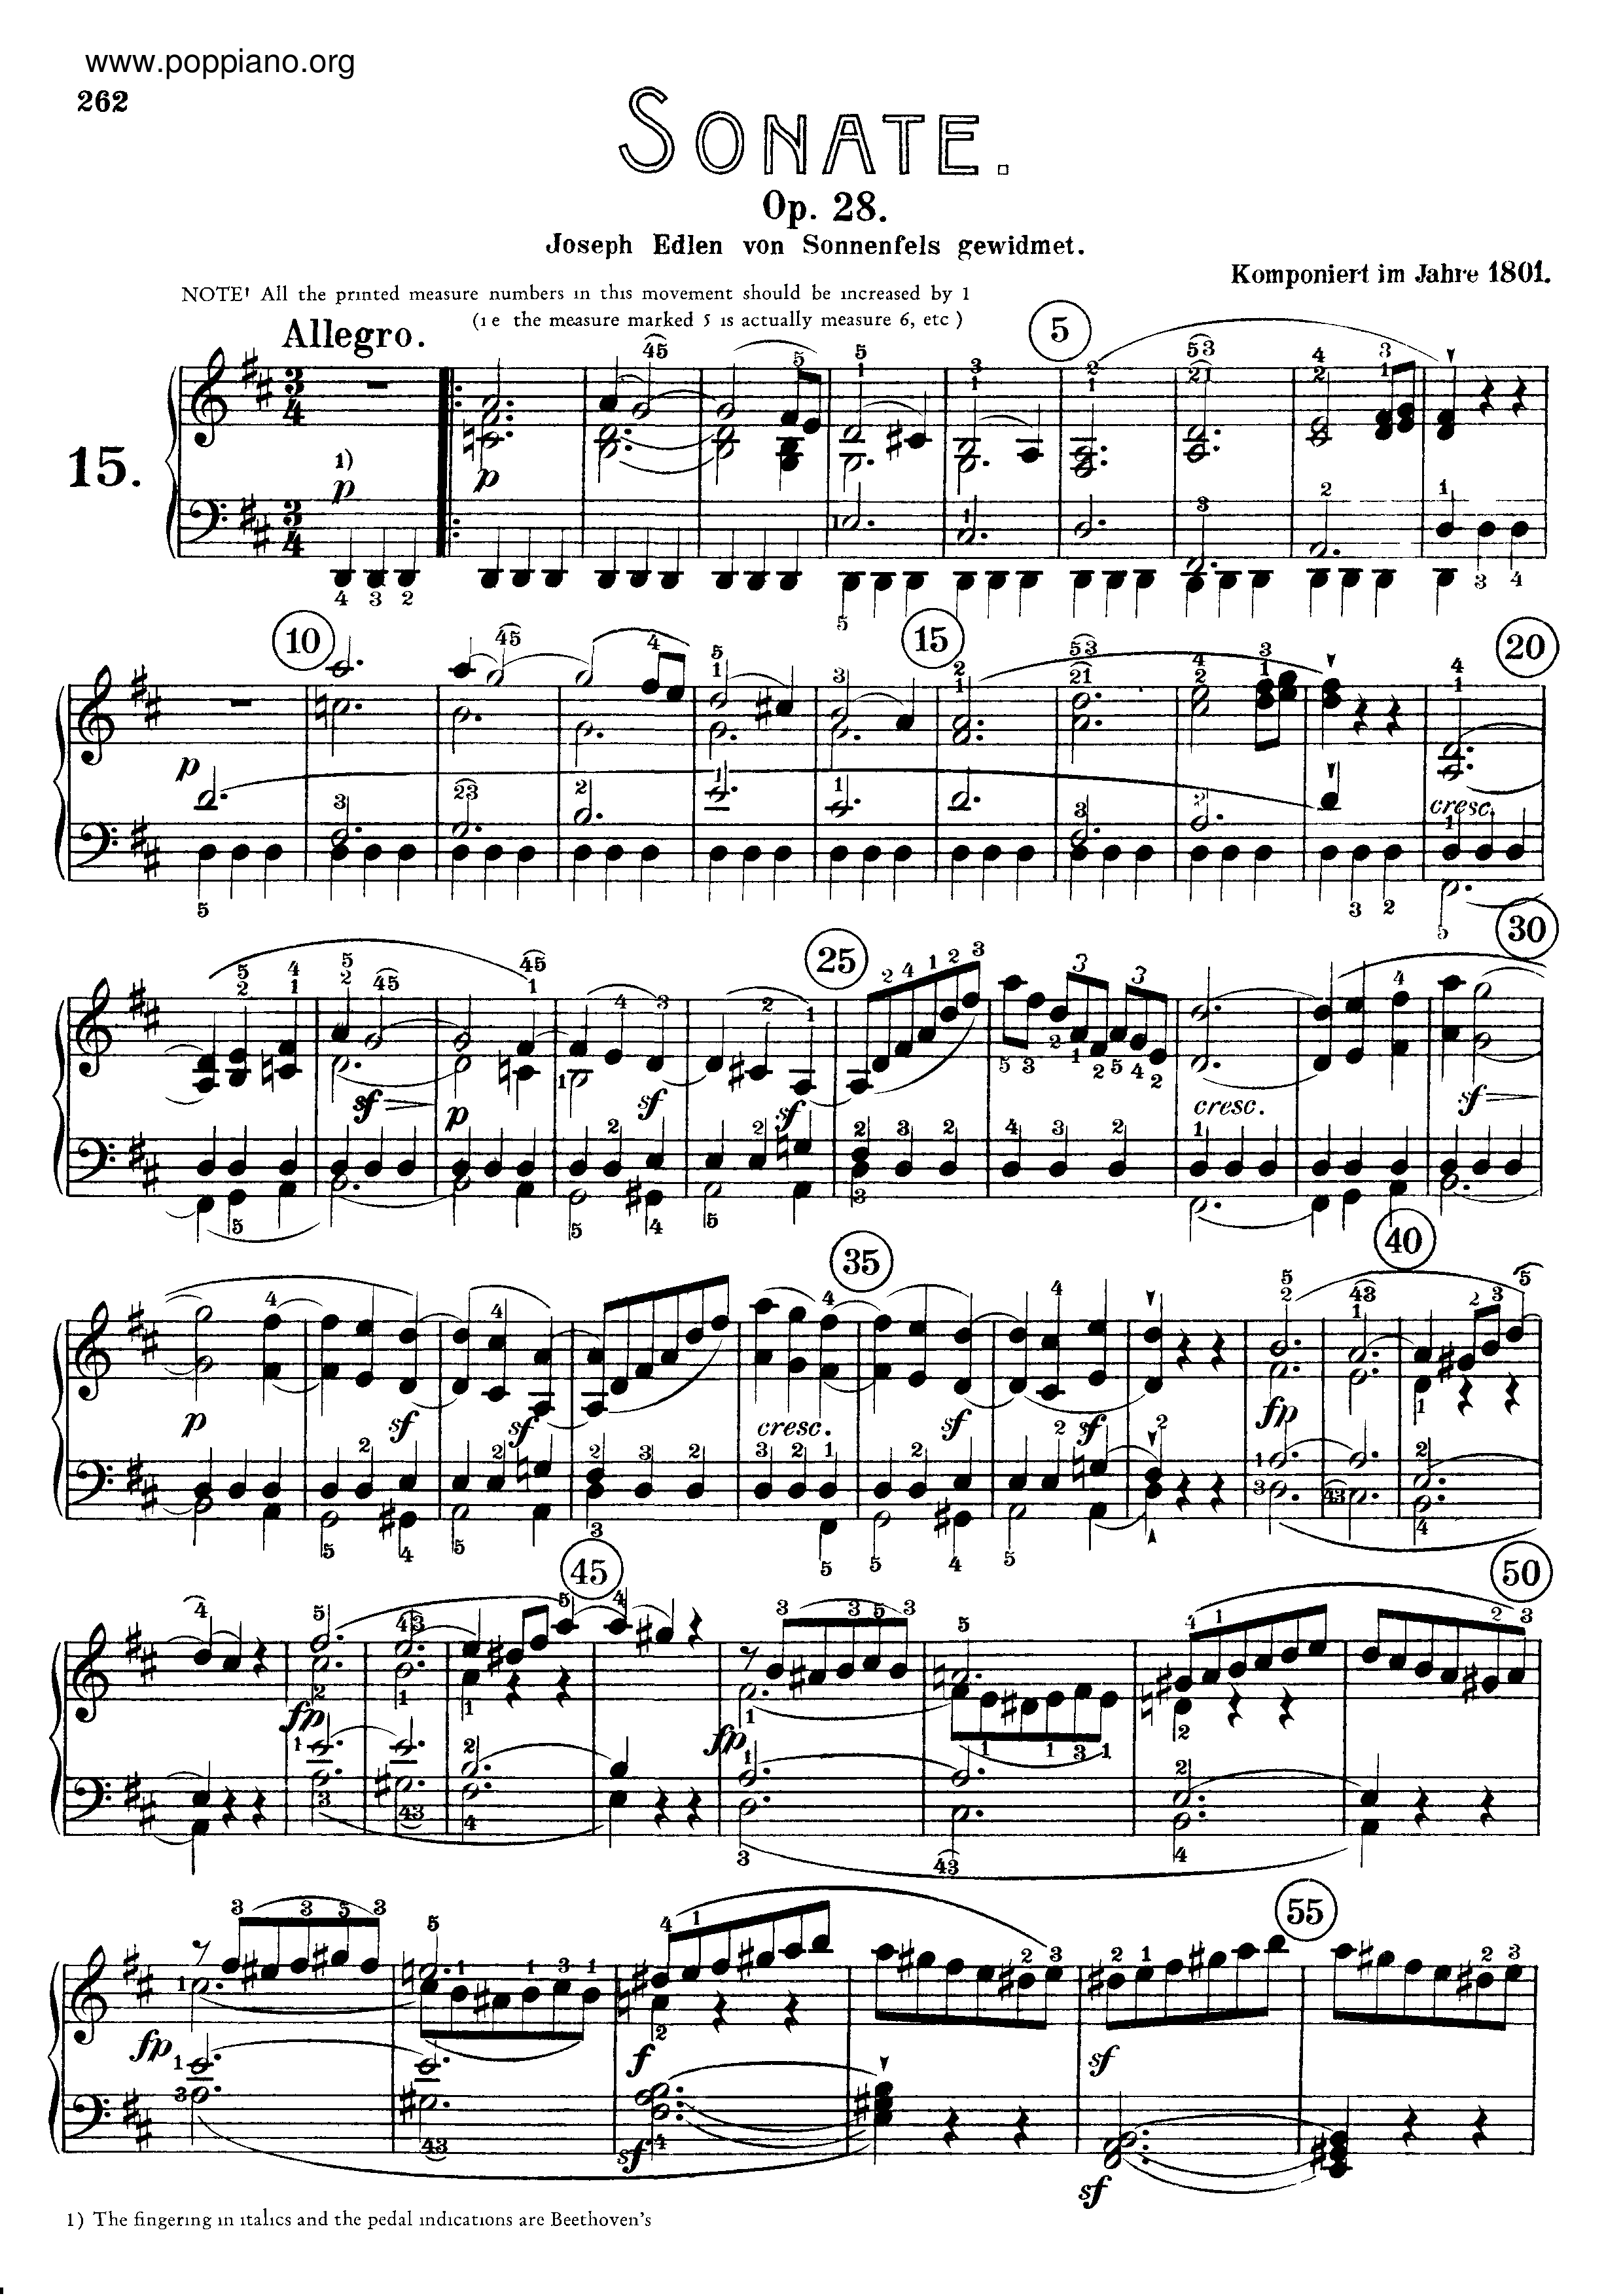 Sonata No. 15 in D major琴譜